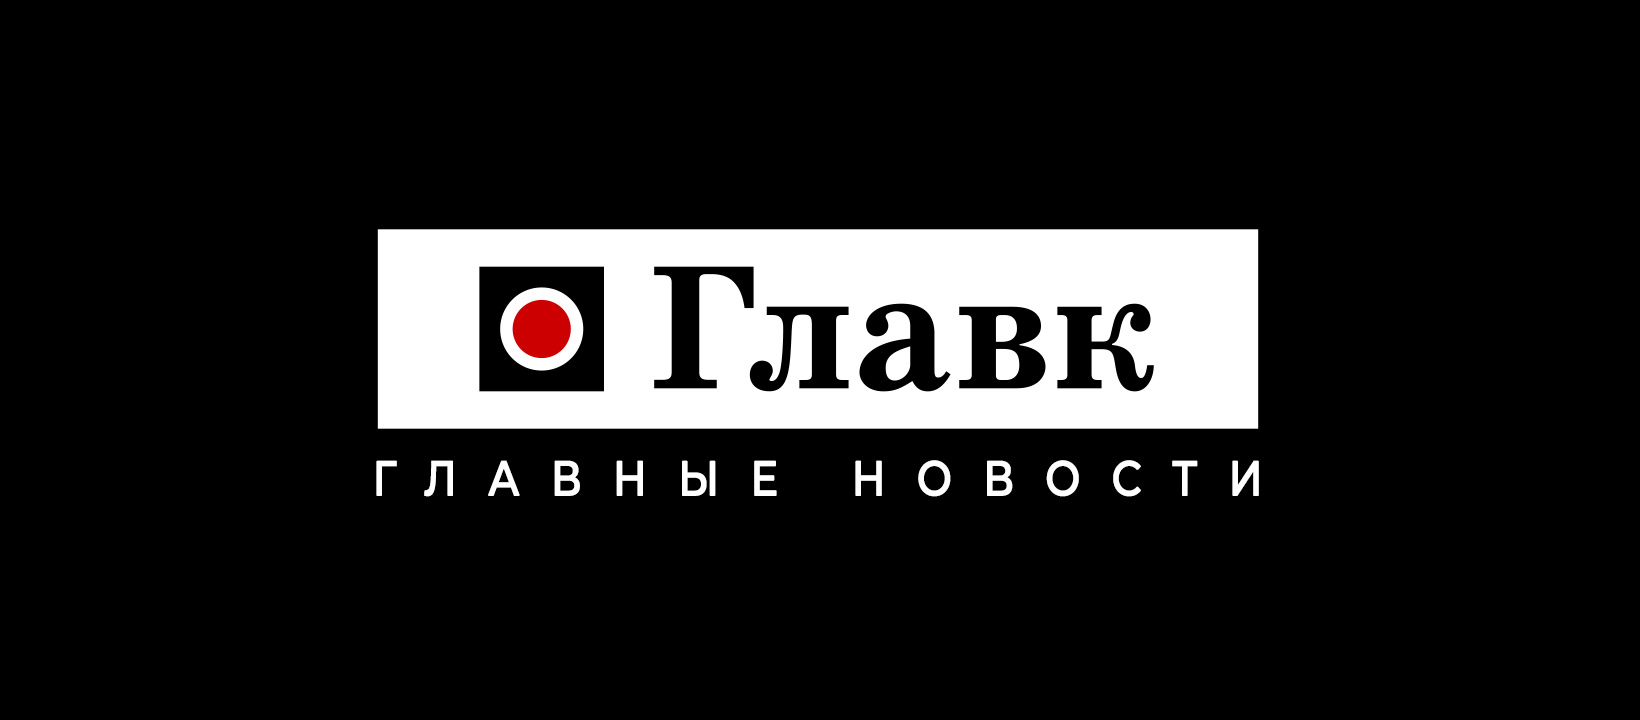 Ксюха Боровских - информационная база